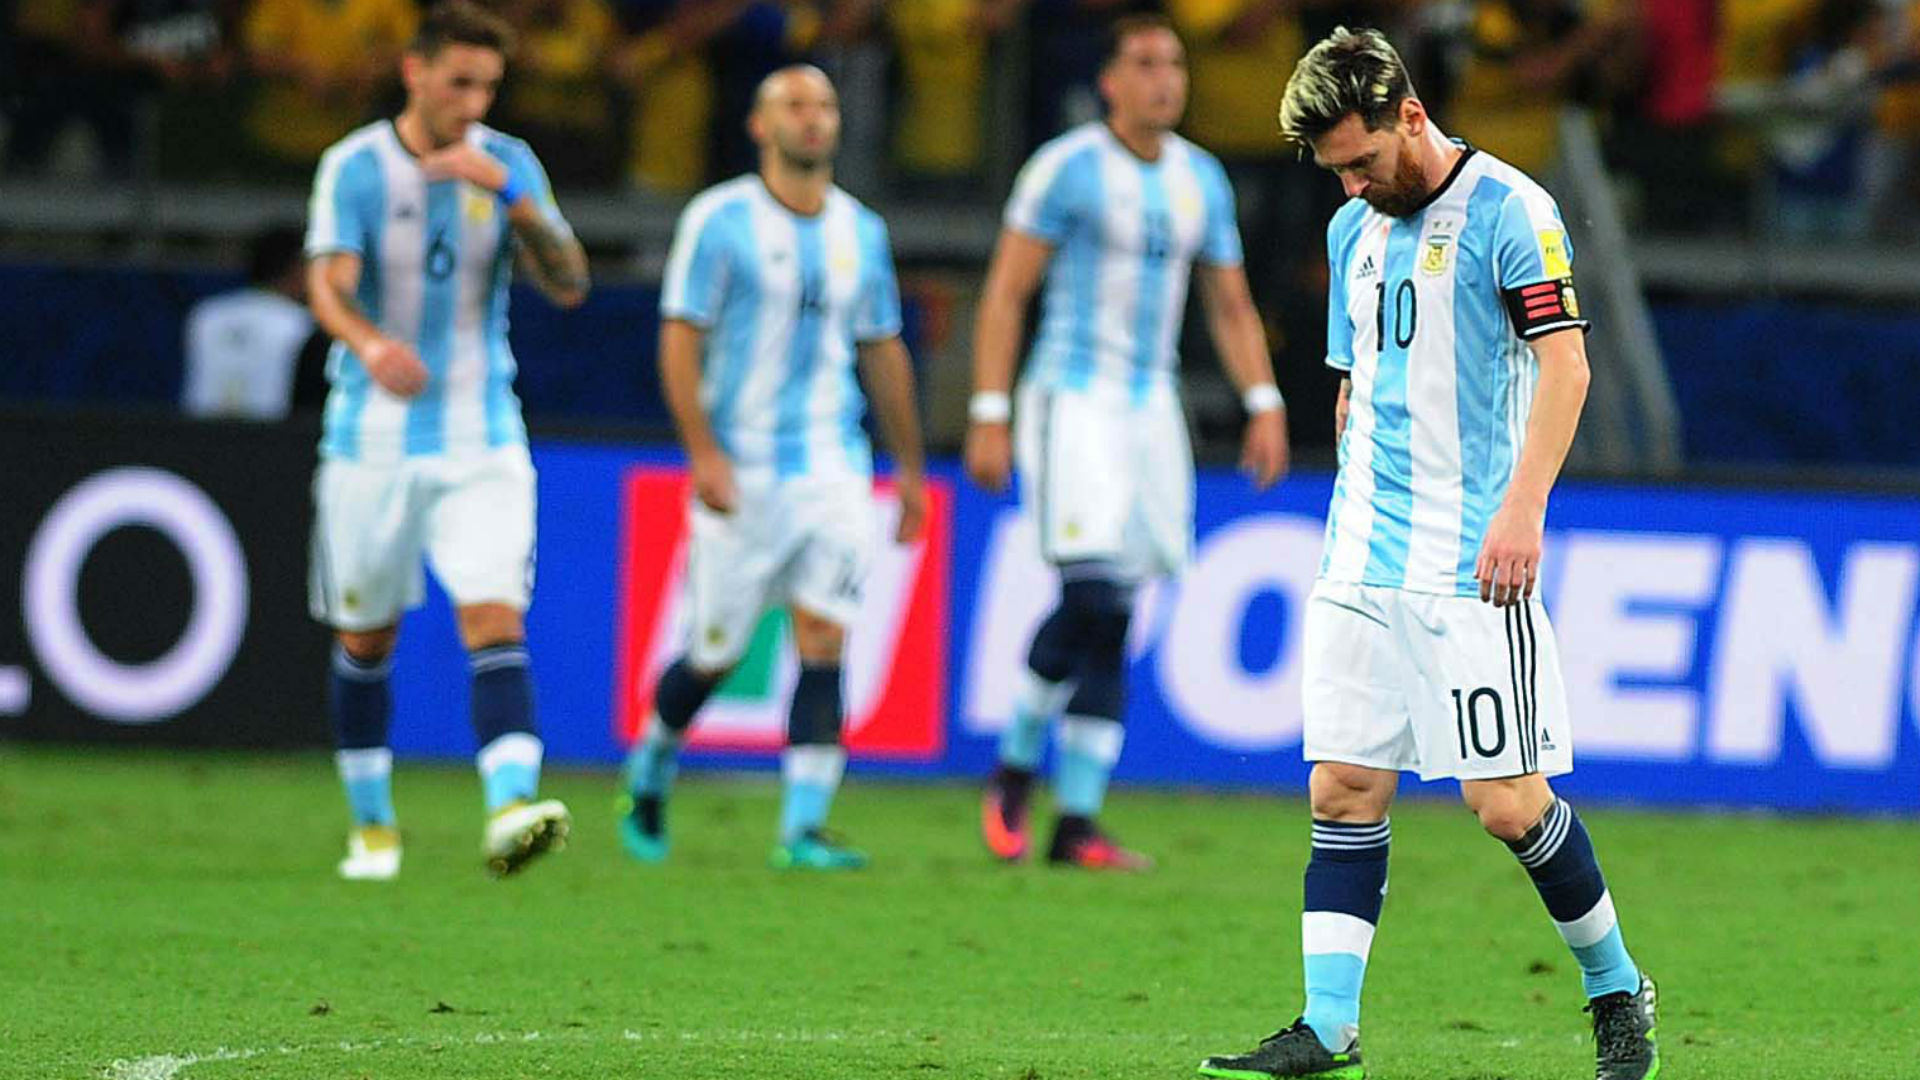 خيبة أمل تصيب المنتخب الأرجنتينى فى تصفيات كأس العالم 2018